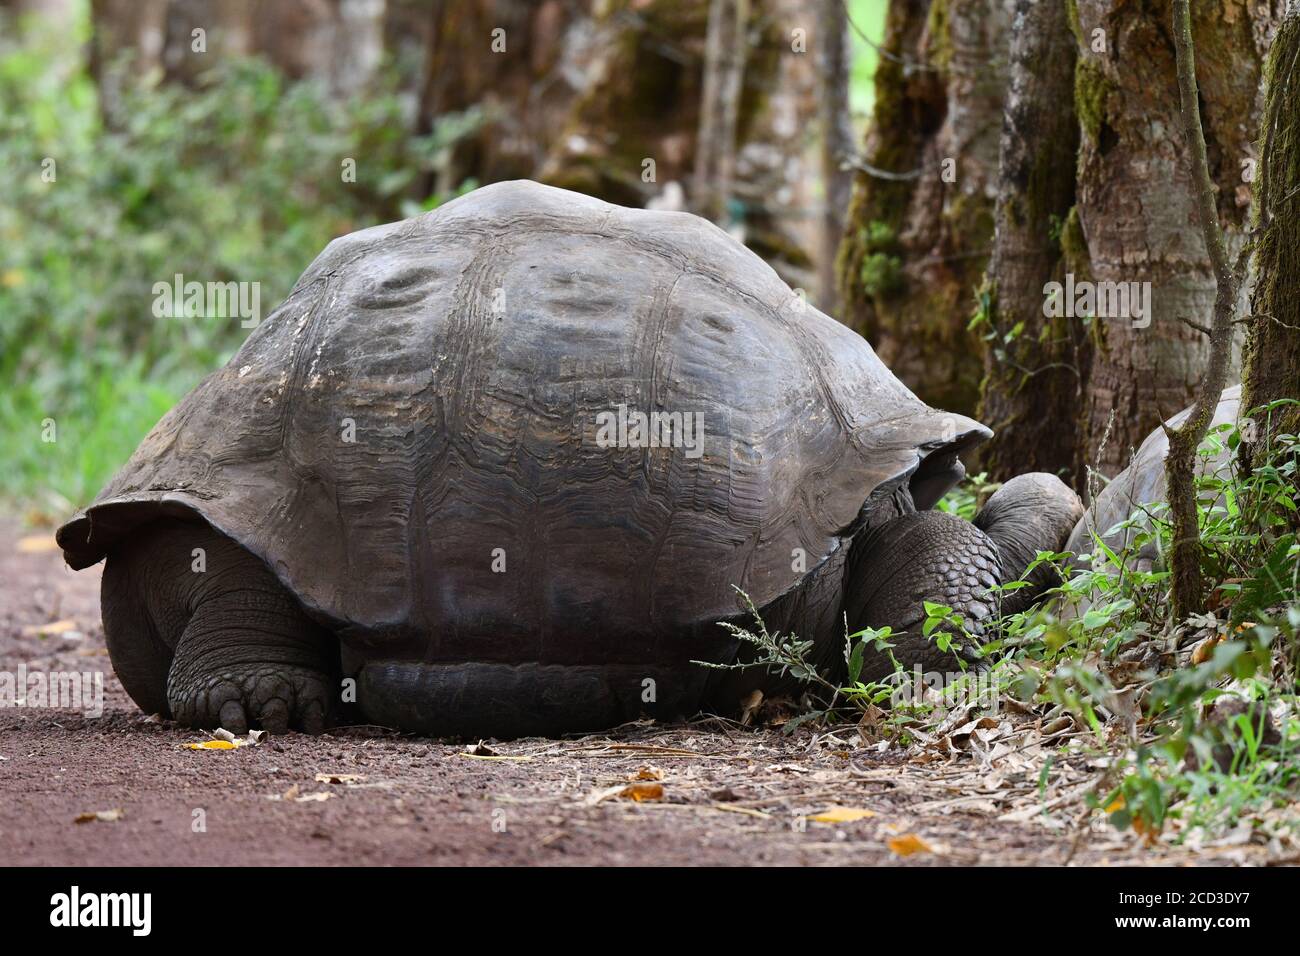 Galapagos tortoise, Galapagos giant tortoise, porteri (Chelonoidis nigra porteri, Geochelone elephantopus porteri, Geochelone nigra porteri, Testudo Stock Photo